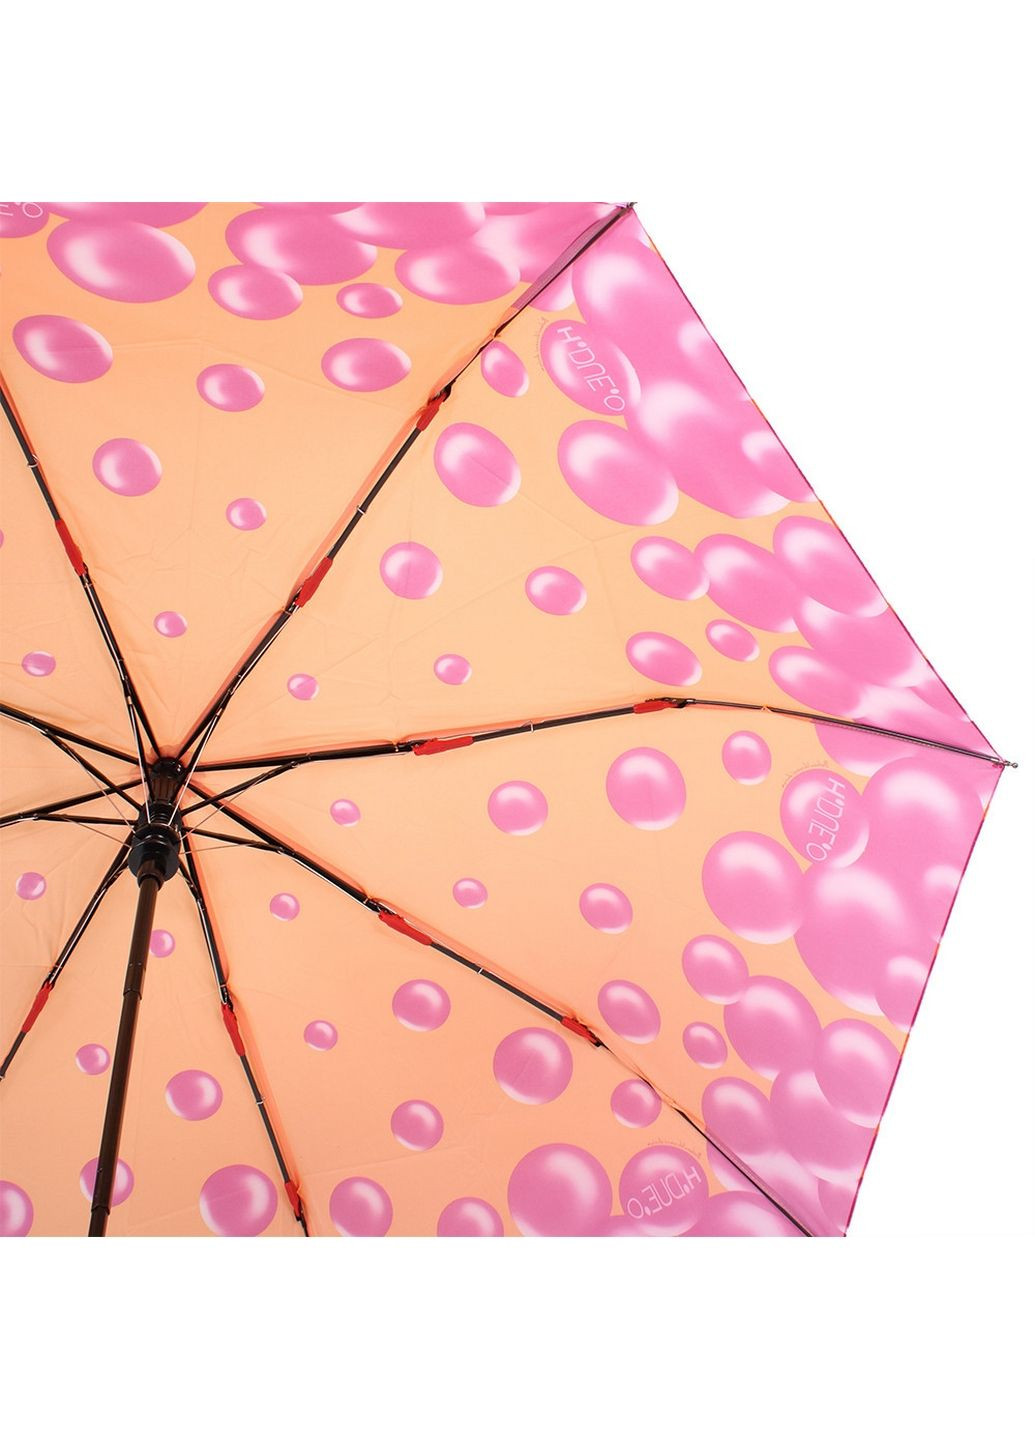 Жіноча складна парасолька напівавтомат H.DUE.O (282595068)